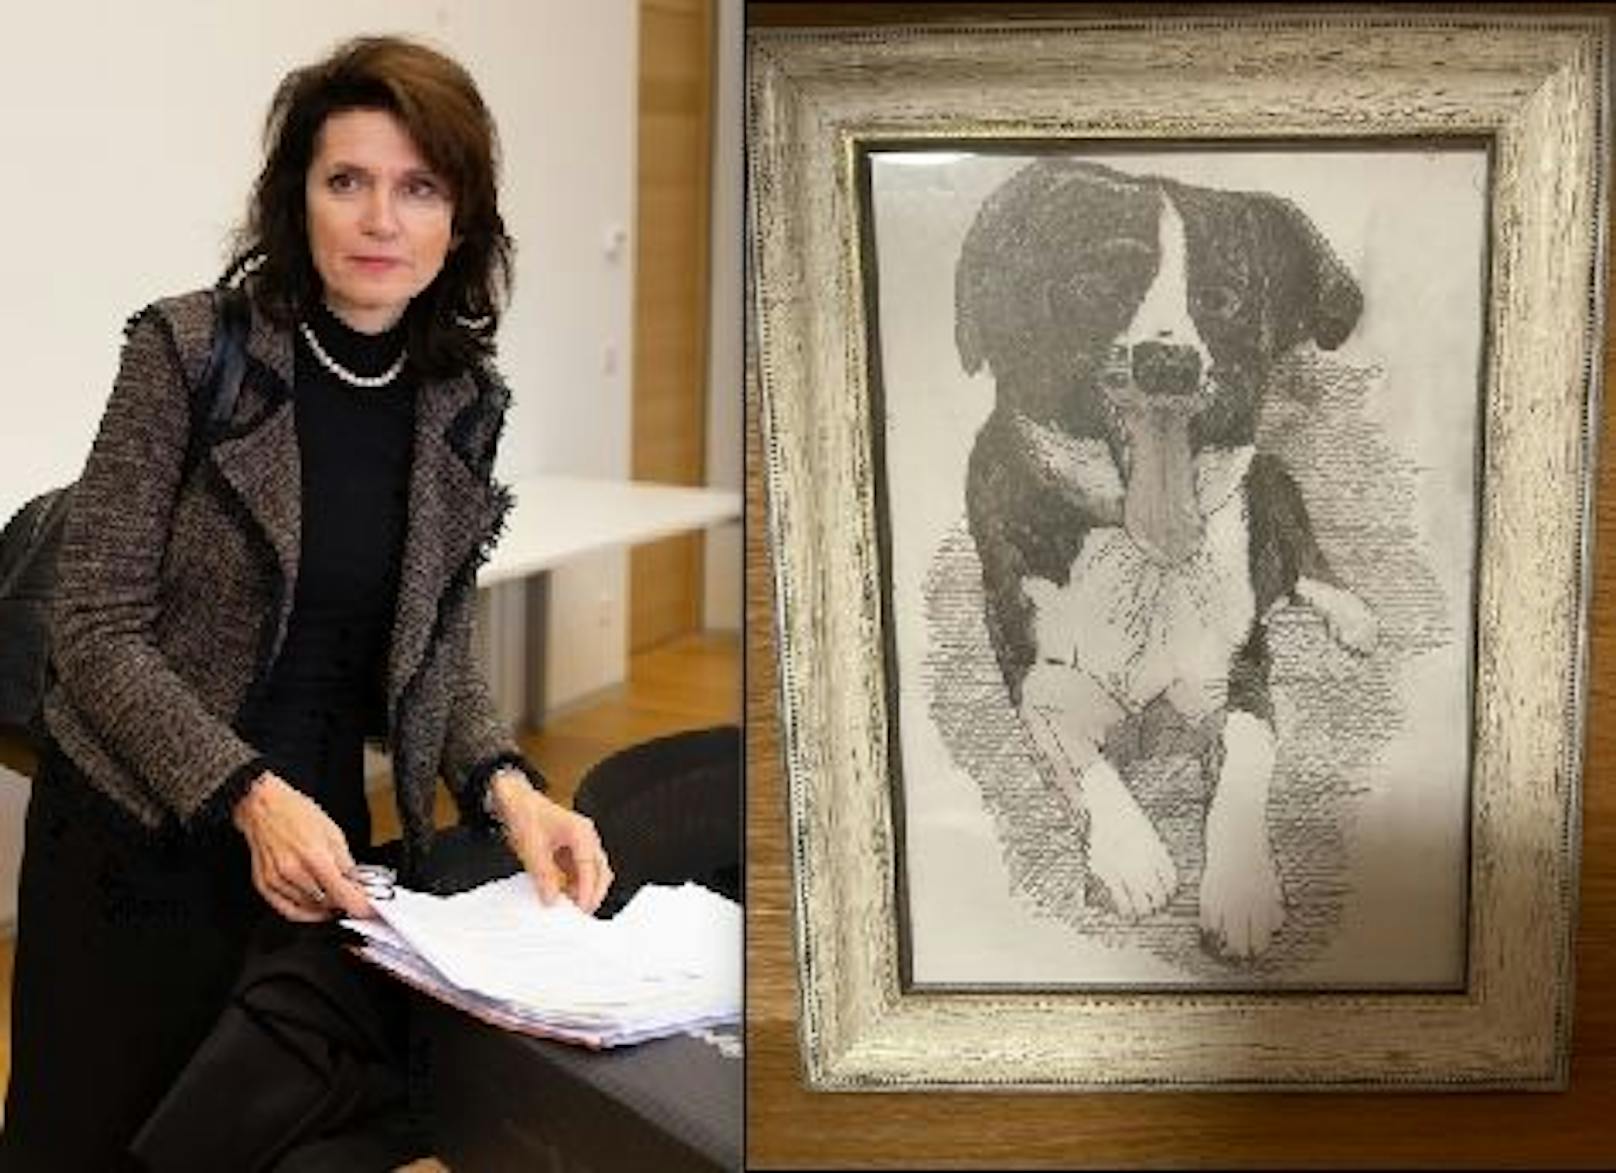 Hundebild wird versteigert; Anwältin Astrid Wagner